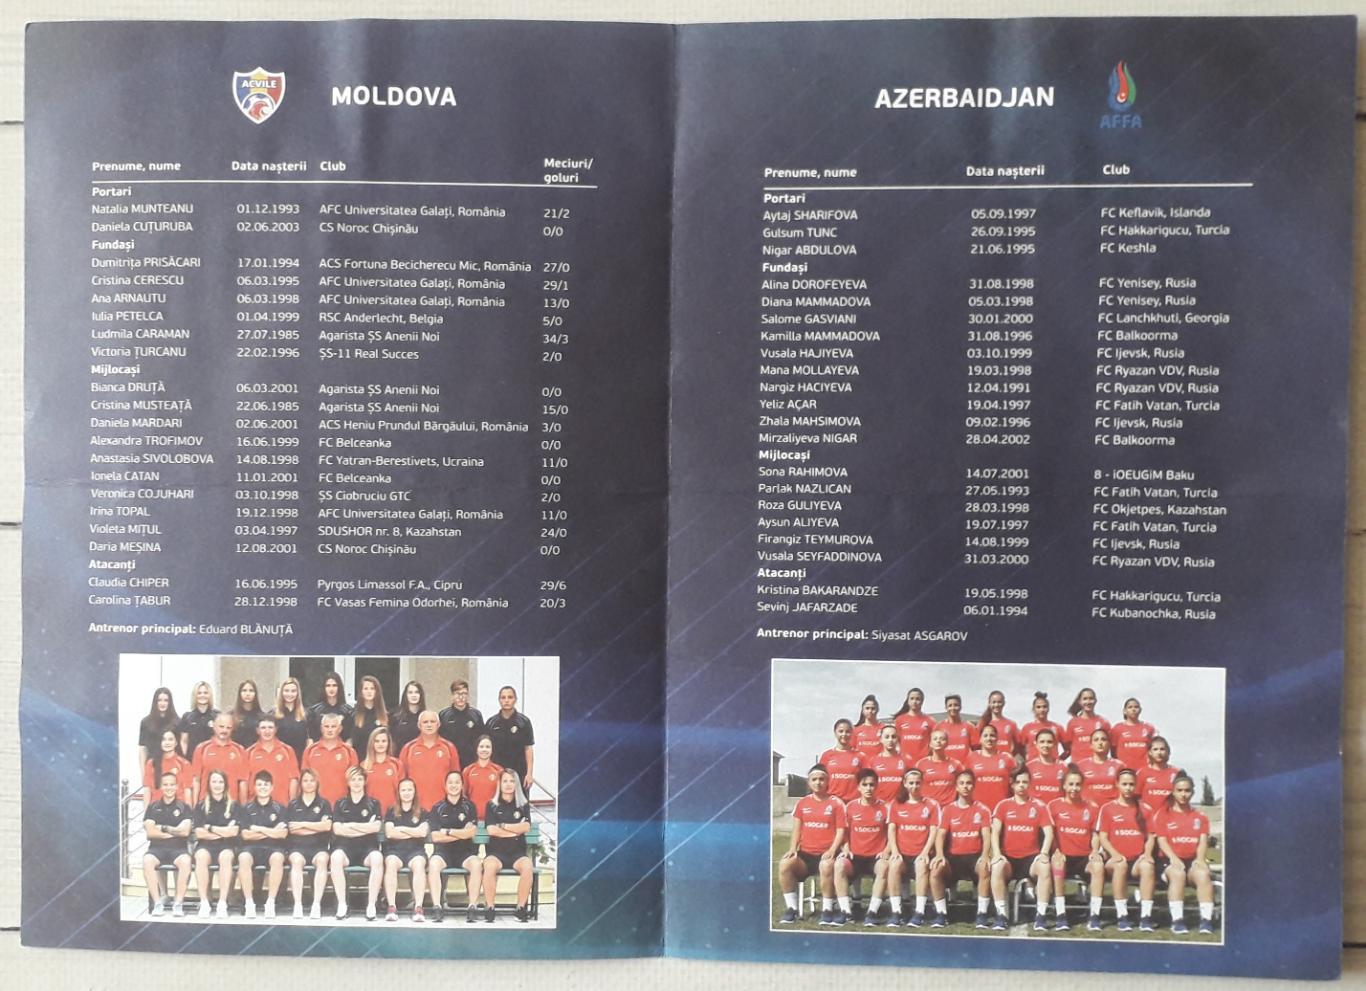 Молдова - Азербайджан 10.11.2019. Женский футбол 1